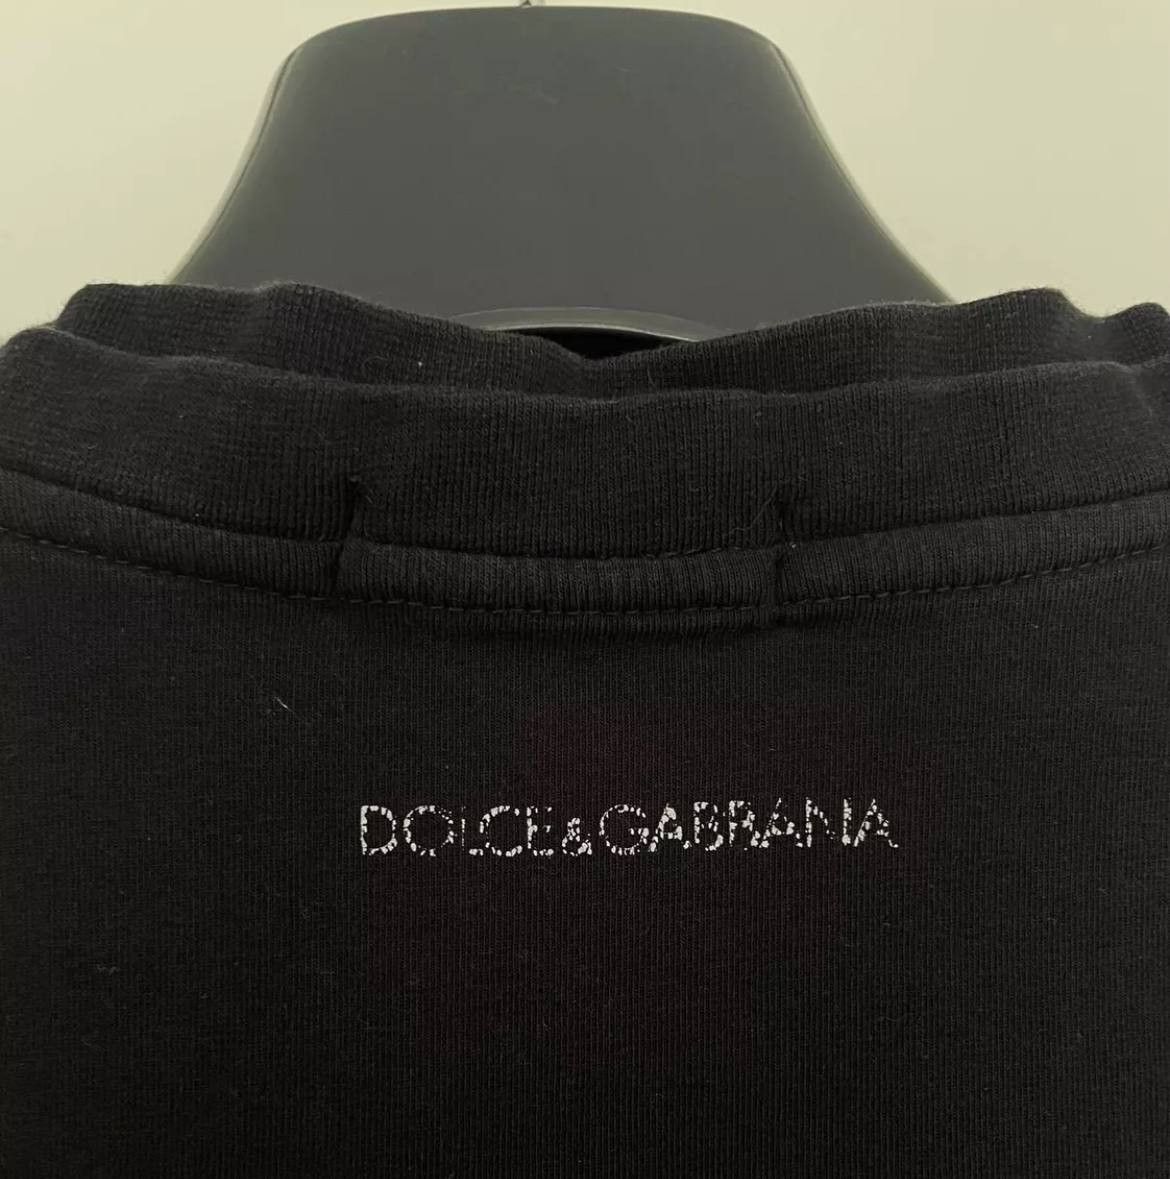 Dolce & Gabbana Luxury Dolce Gabbana Polo Shirt Metal Patch Logo Size US M / EU 48-50 / 2 - 4 Thumbnail